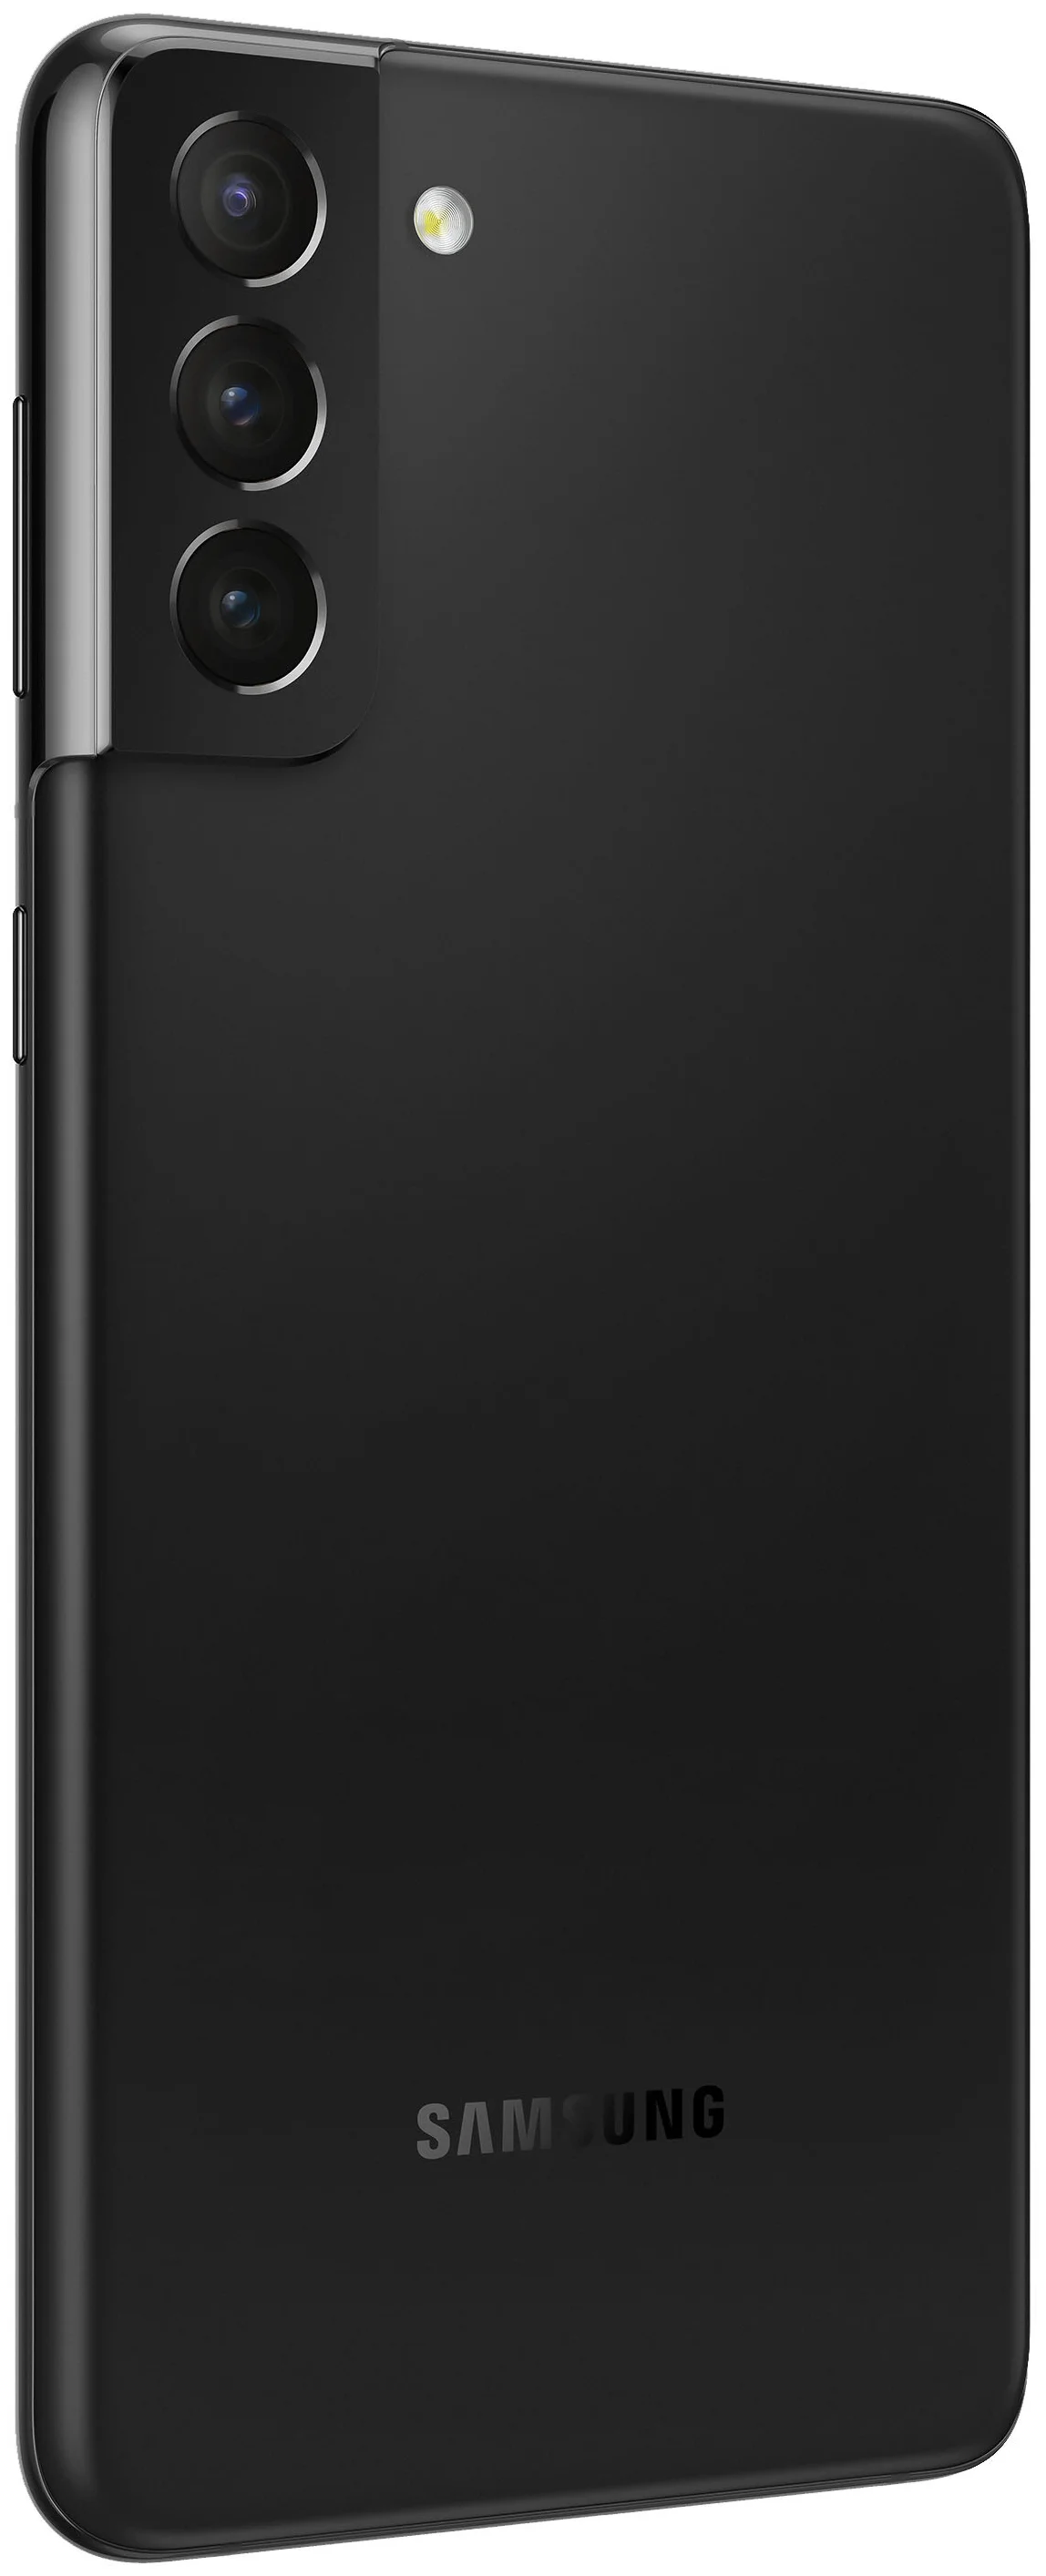 Samsung Galaxy S21+ 5G (SM-G996B) - беспроводные интерфейсы: NFC, Wi-Fi, Bluetooth 5.2